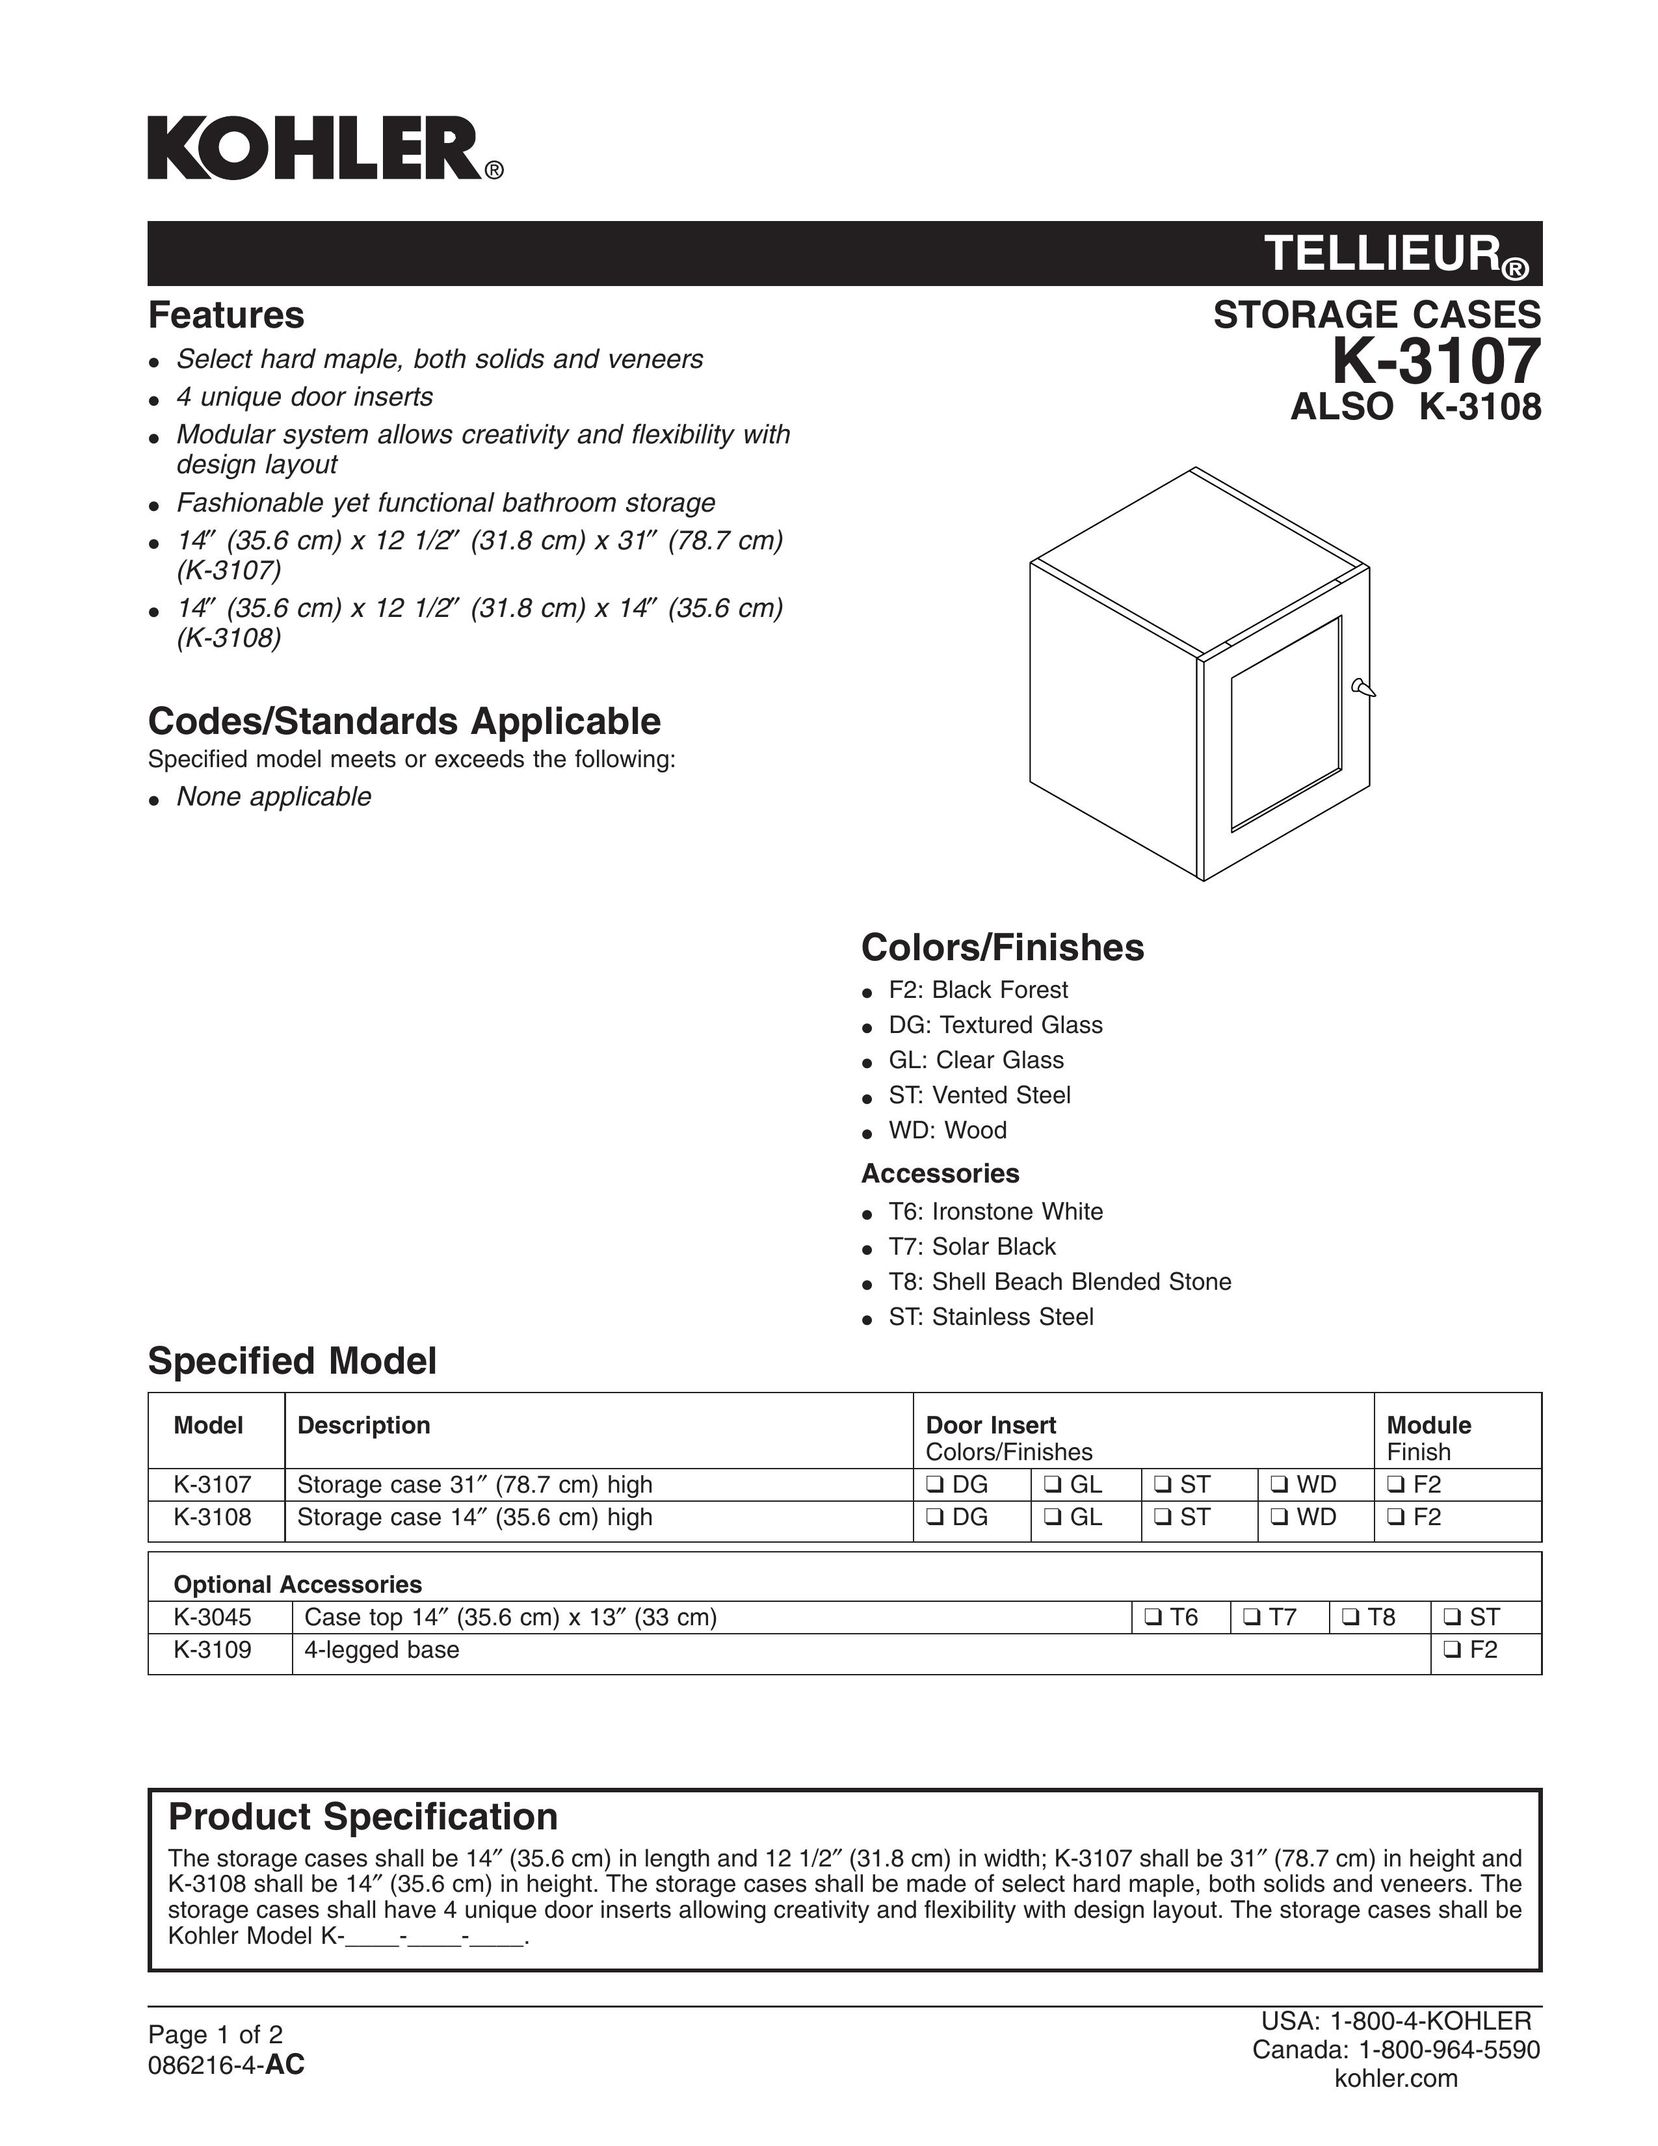 Kohler K-3107 Tool Storage User Manual